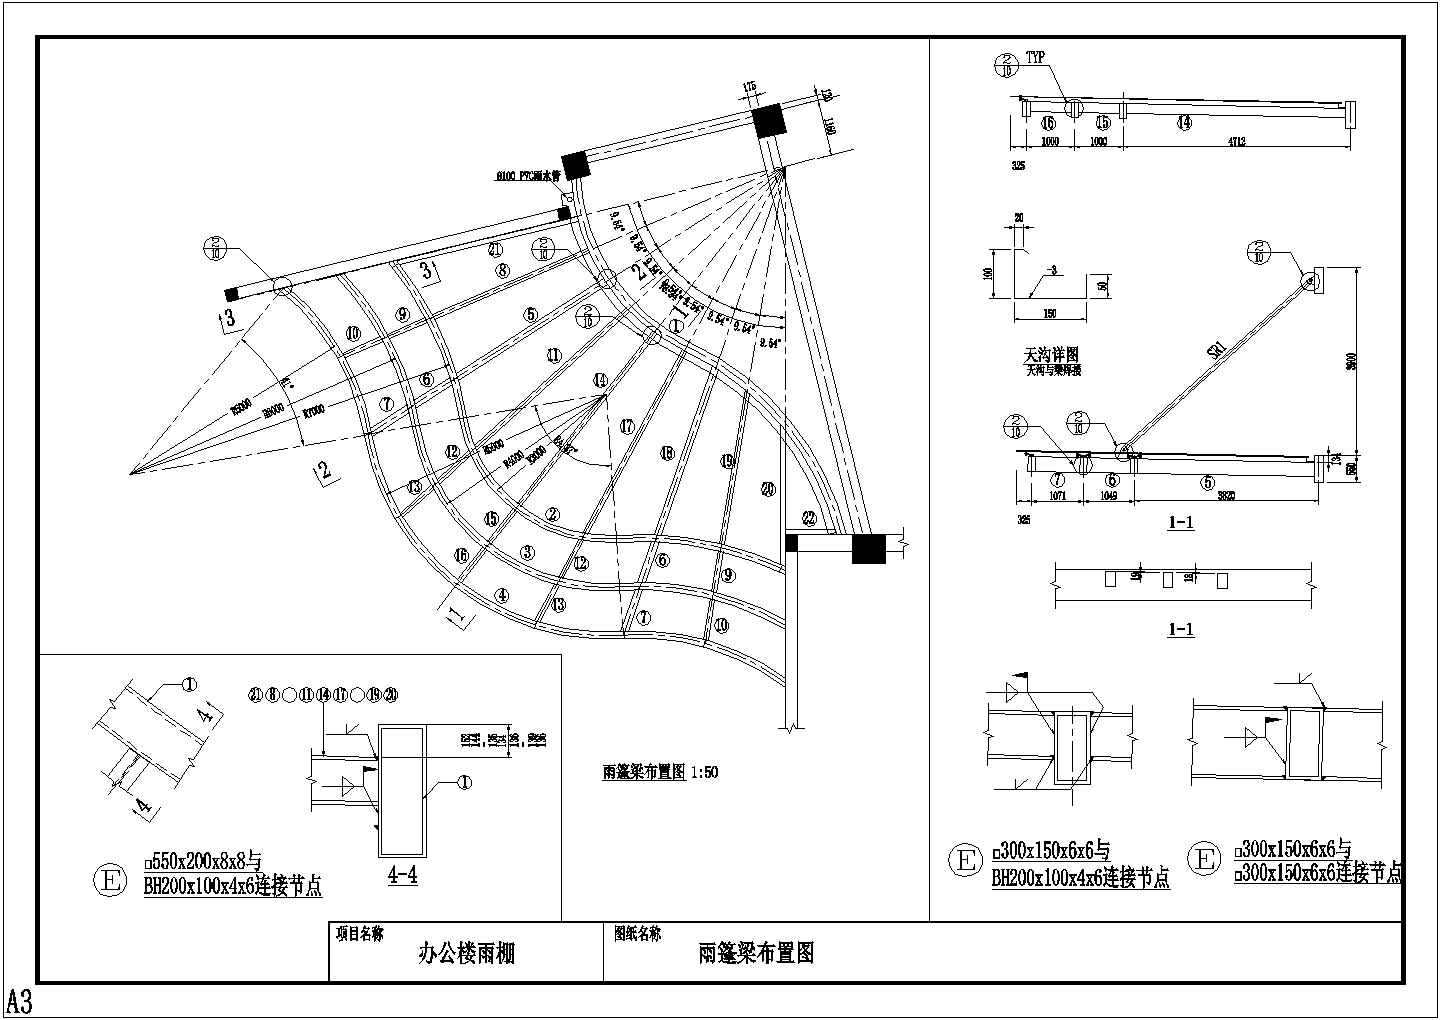 【潍坊市】某办公楼钢结构玻璃雨棚设计图纸